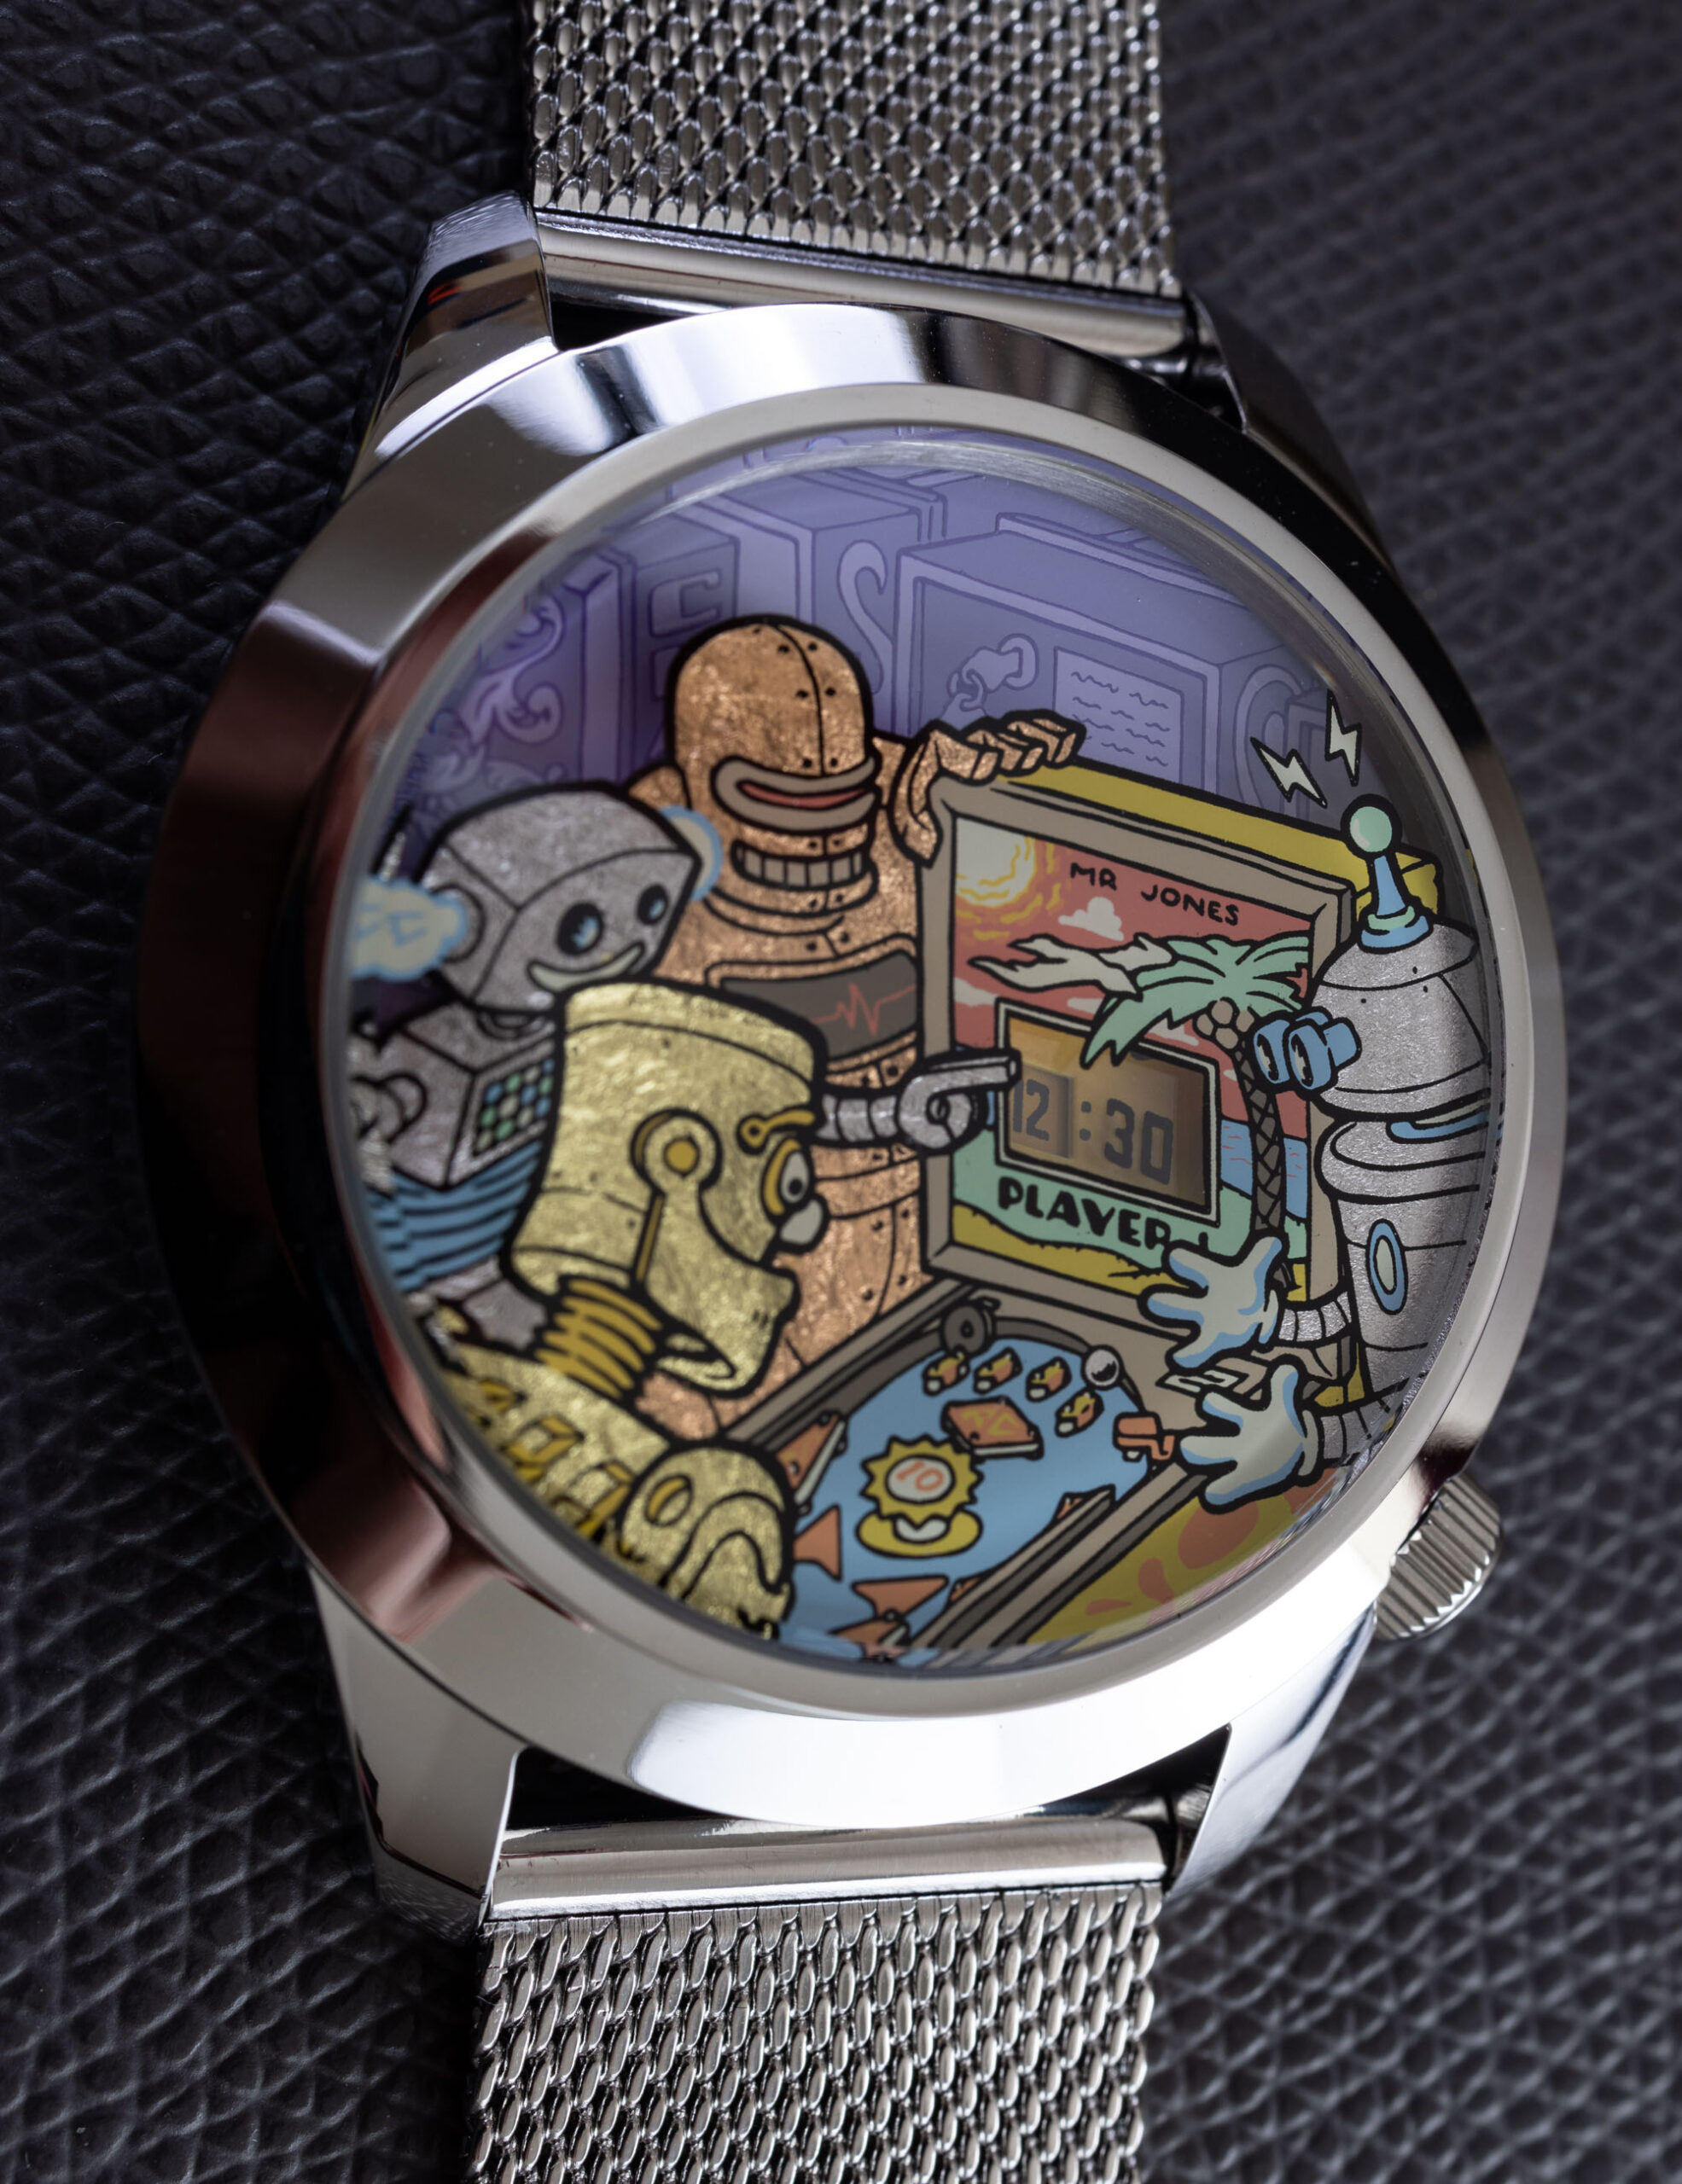 Обзор часов: Мистер Джонс смотрит на часы Ricochet XL с роботами, играющими в пинбол